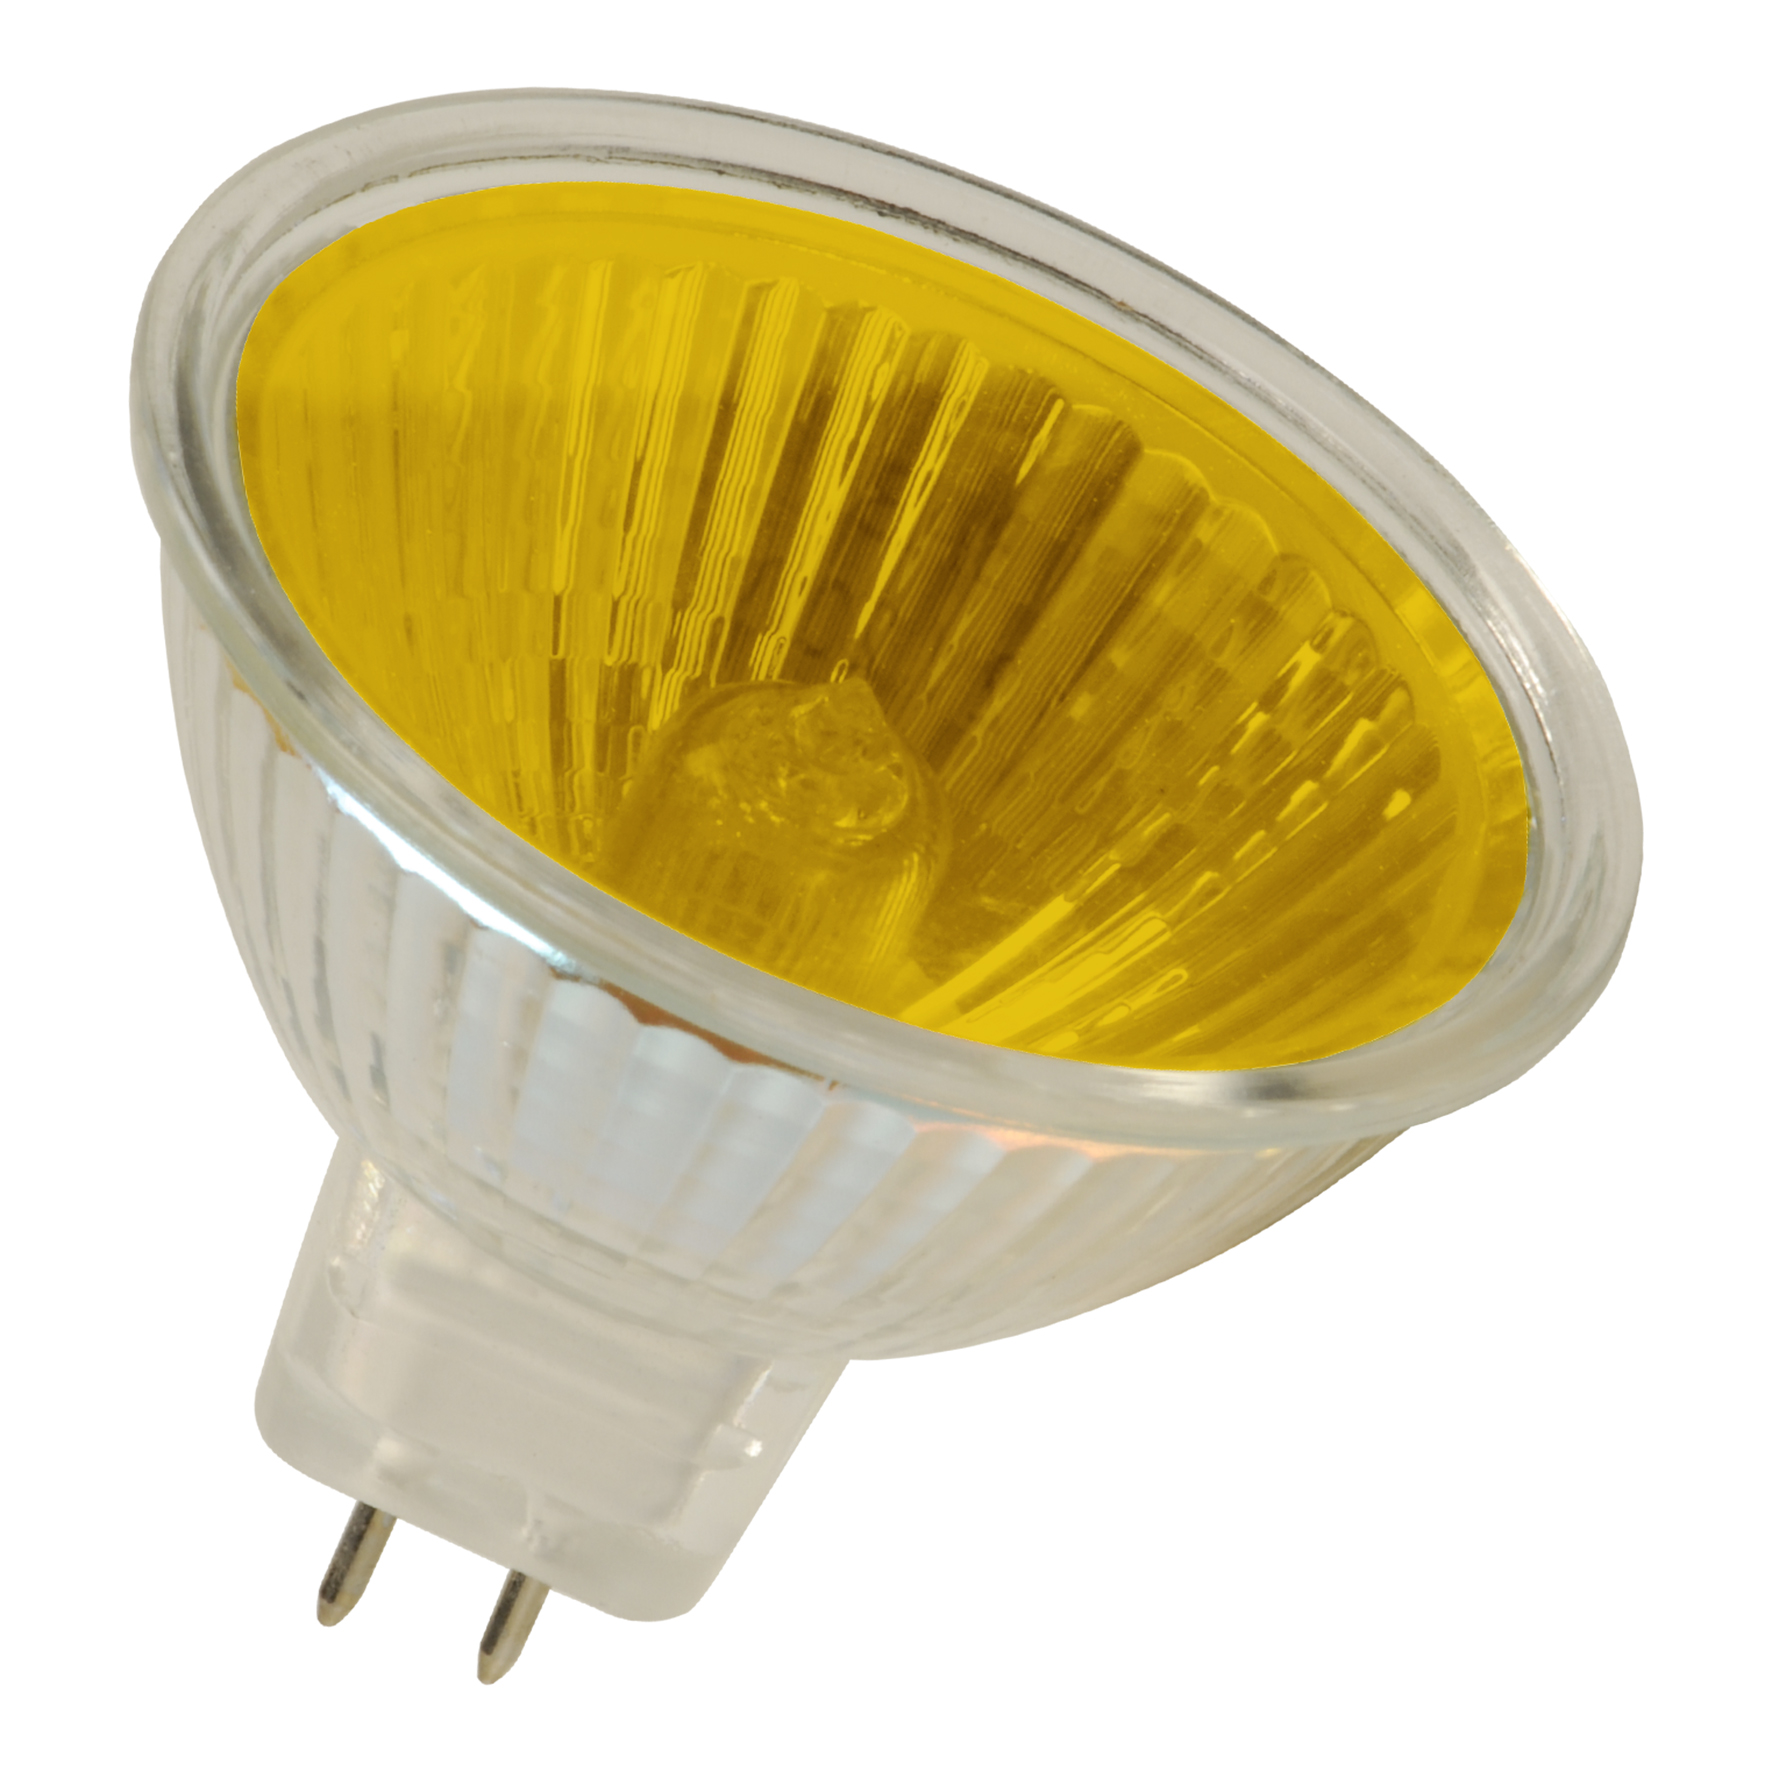 08714681073247 - Lampe halogène basse tension avec réflecteur - Lampes -  e-Bailey